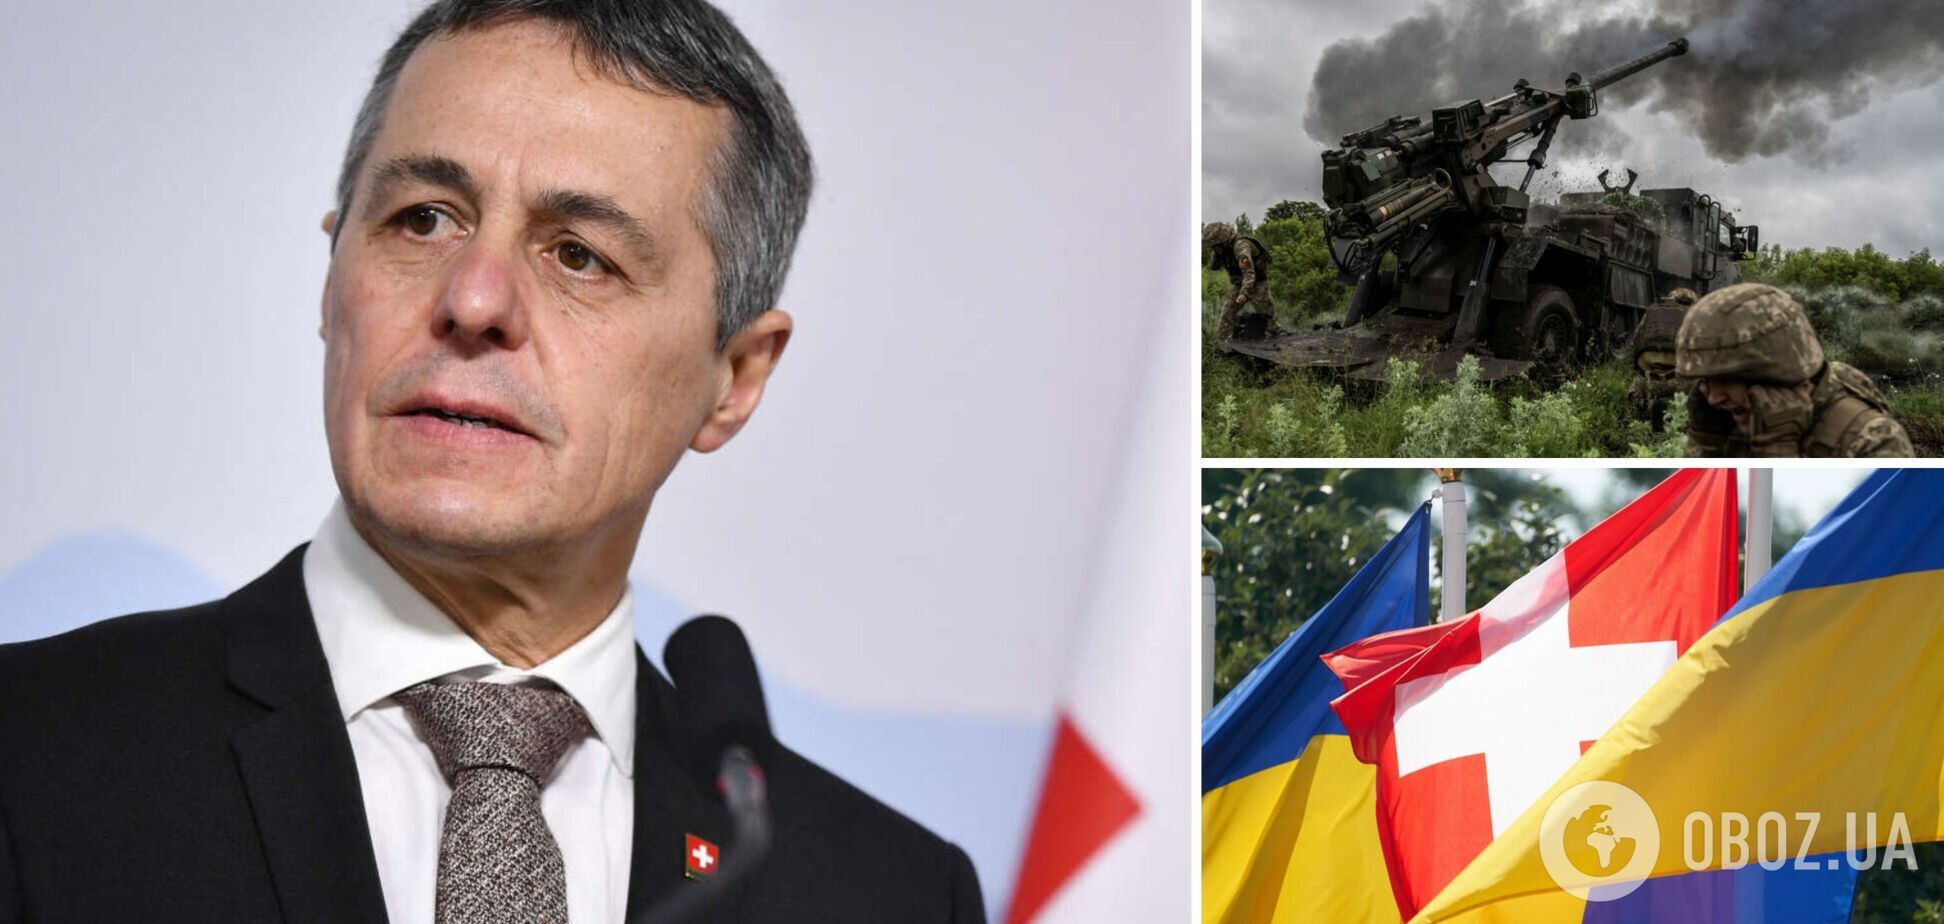 'Я никогда не устану повторять это': глава МИД Швейцарии призвал Россию немедленно вывести войска из Украины